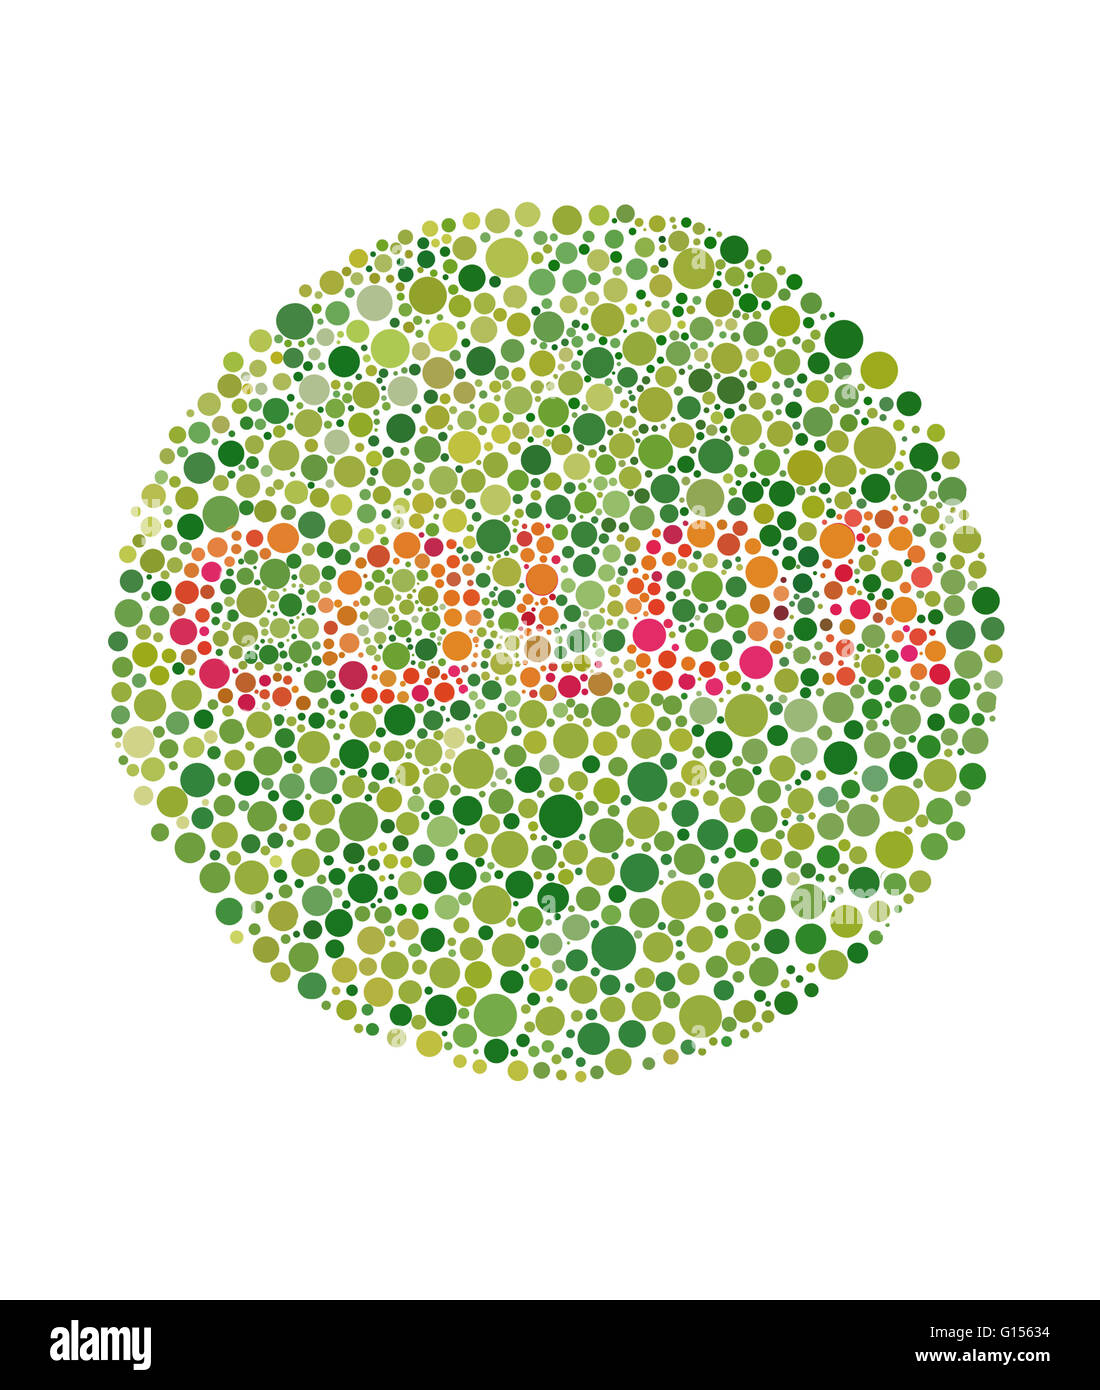 Los científicos dan nombre a 39 colores para que la visión